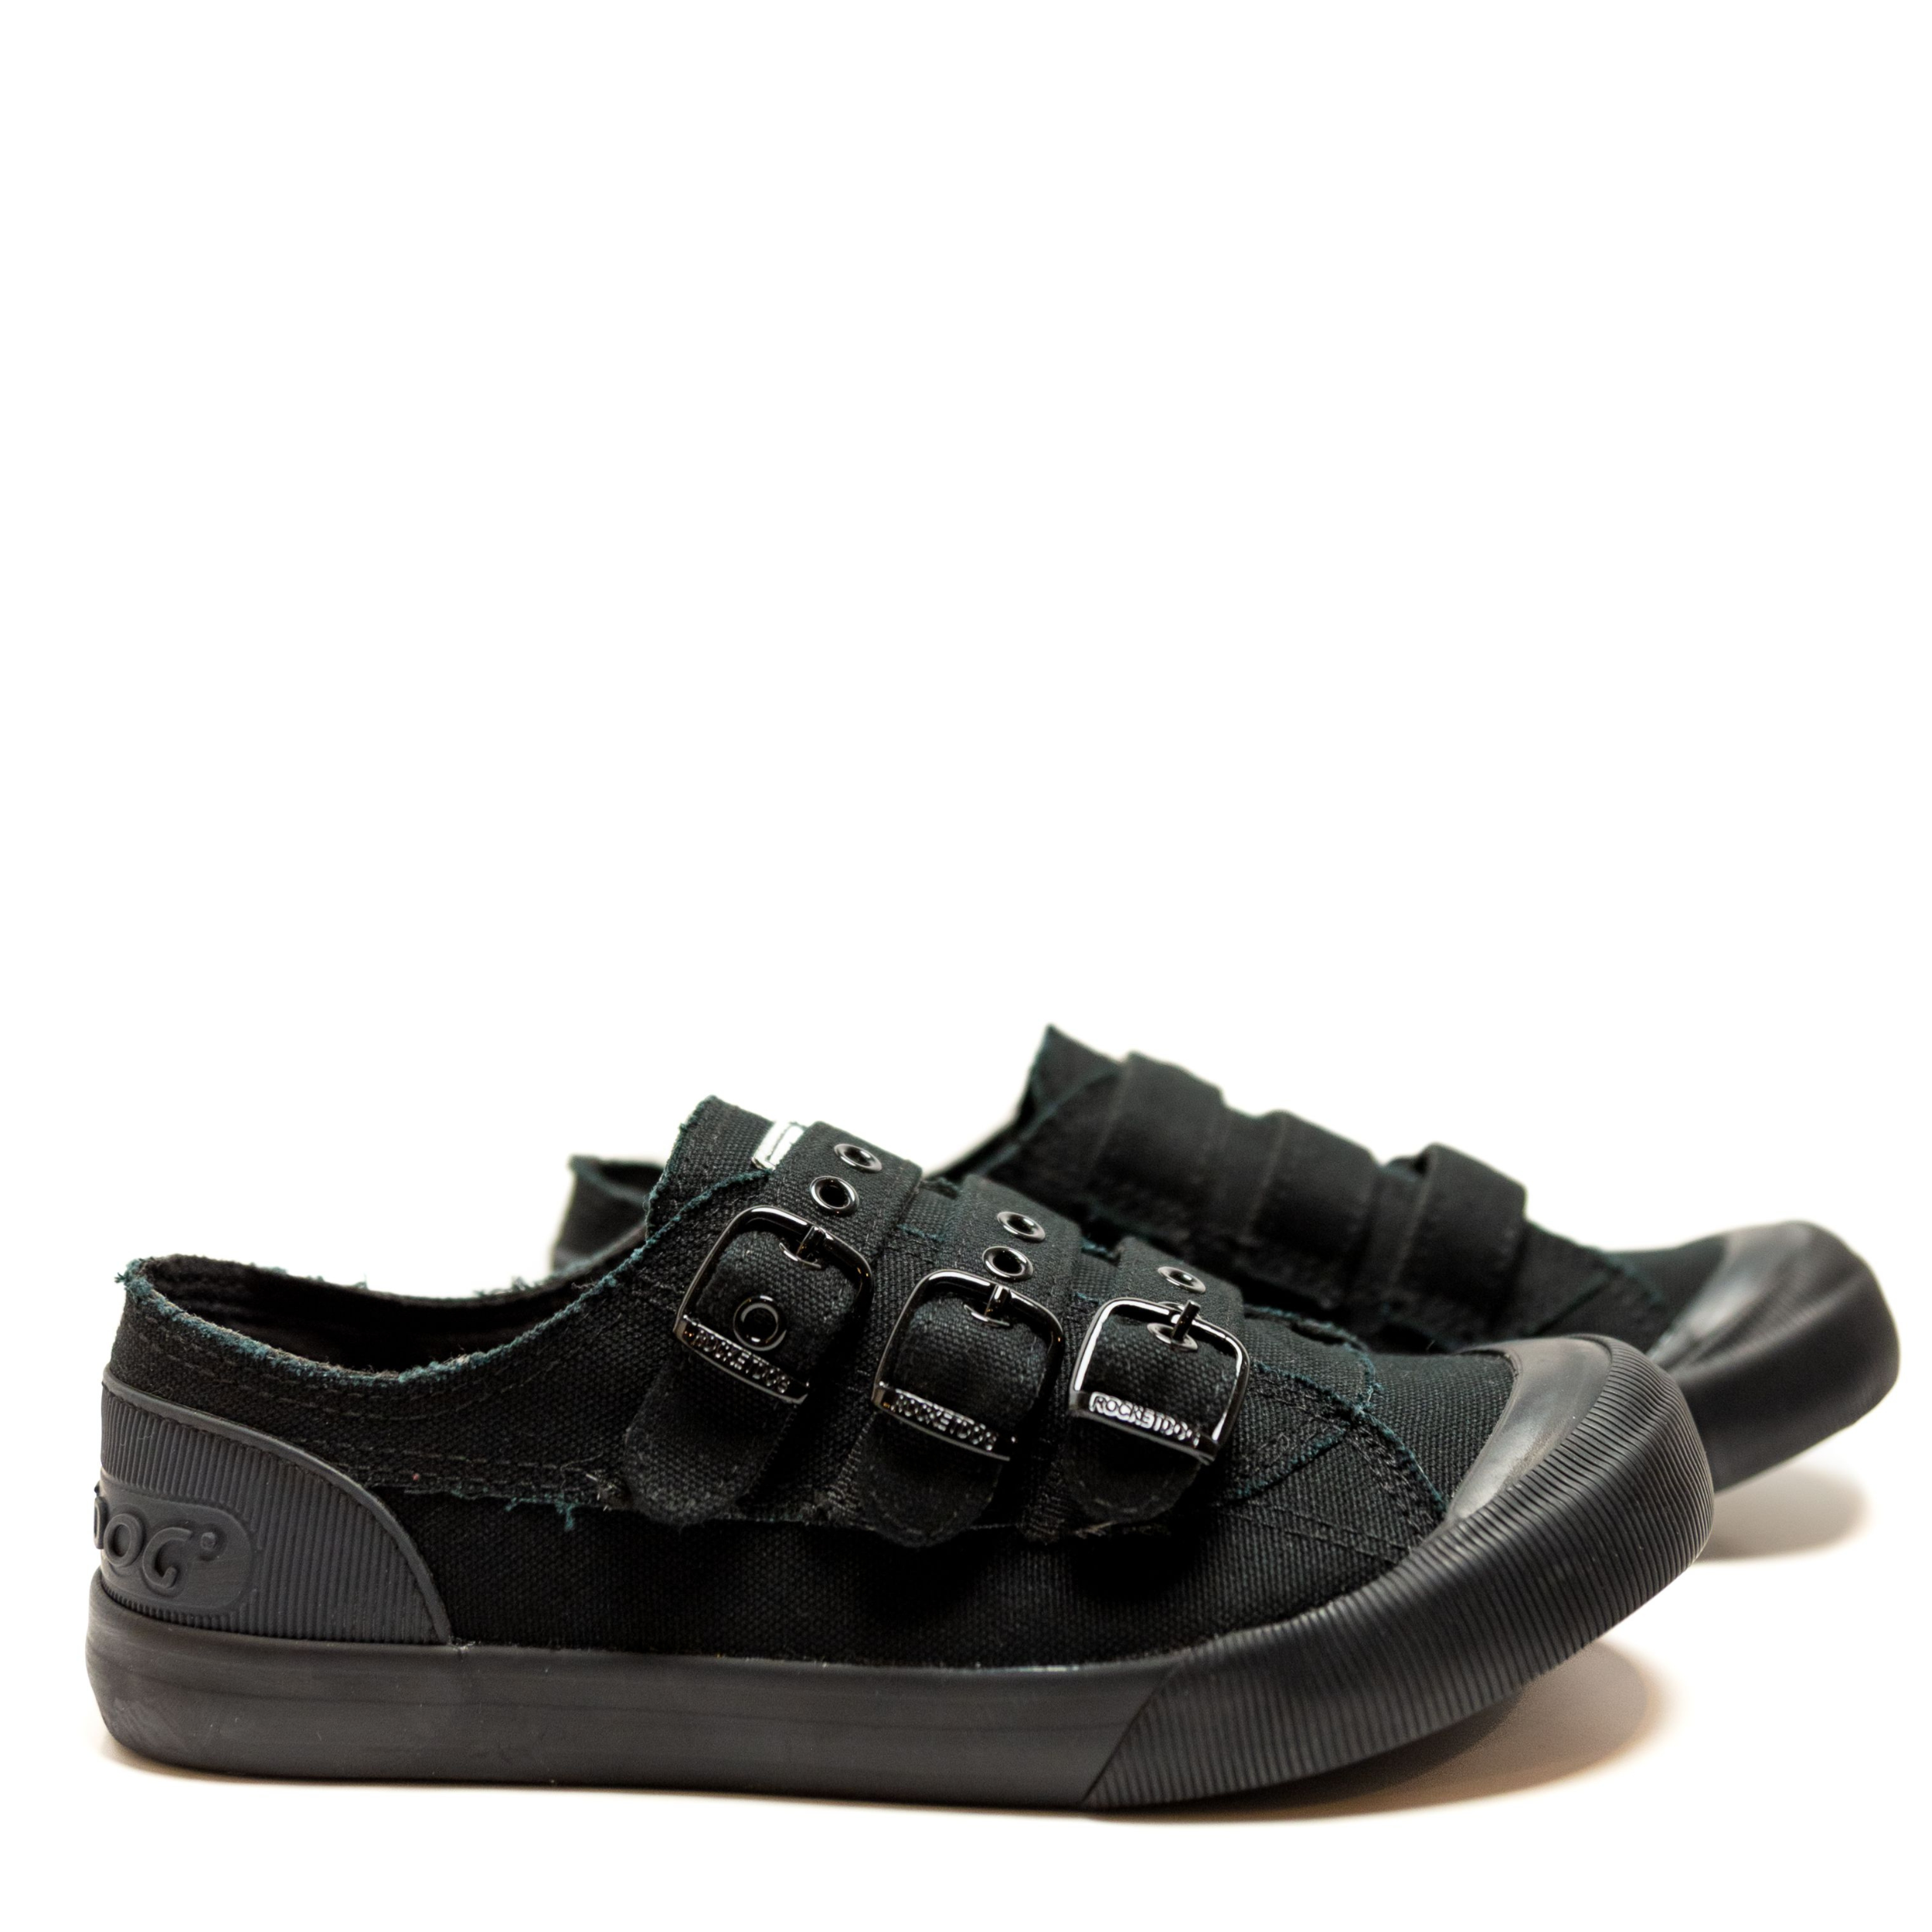 Domani Comfort Leather Sneakers (All Black) – Modello Domani